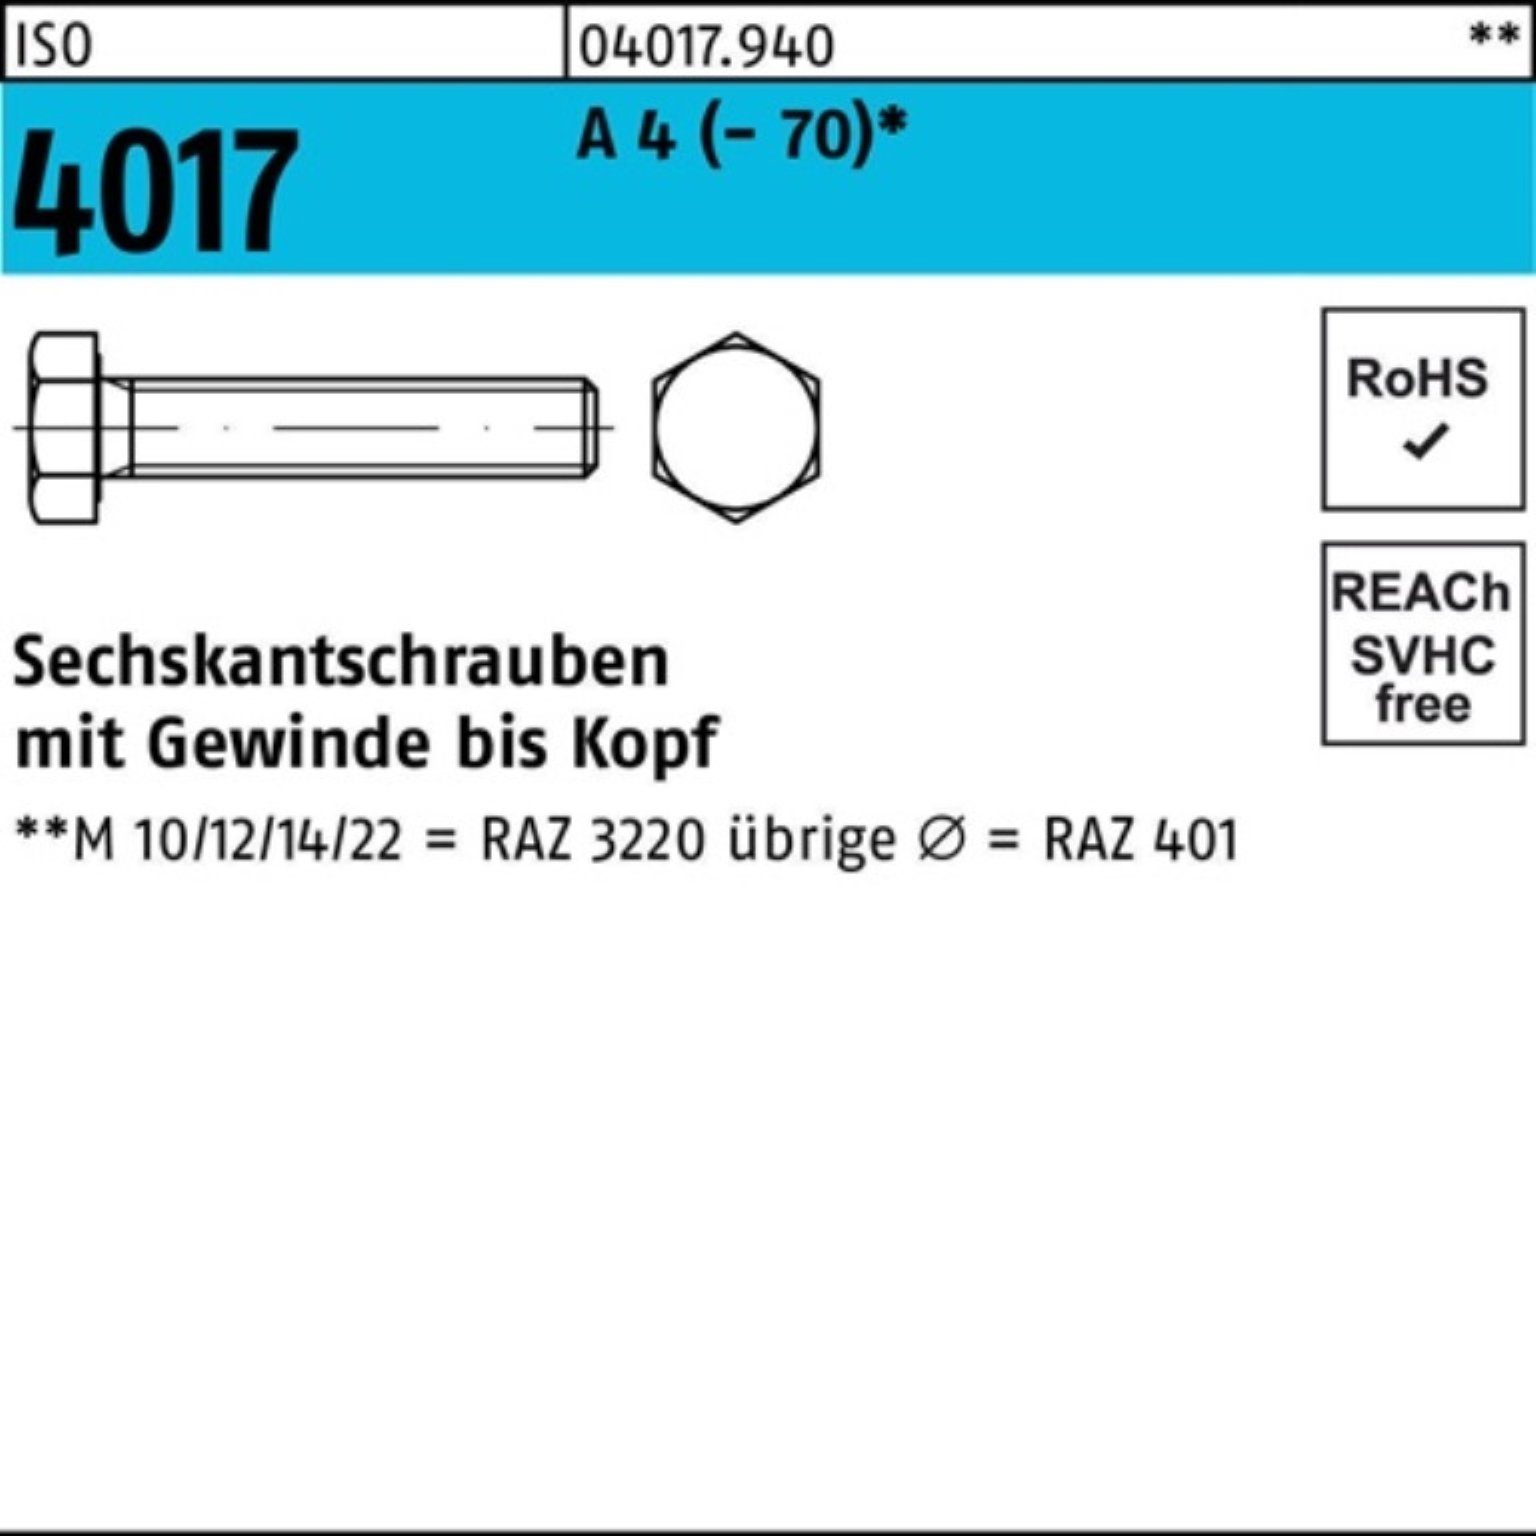 50 Bufab 100er 90 ISO 4 (70) 4017 Sechskantschraube A VG Stück Pack Sechskantschraube M14x